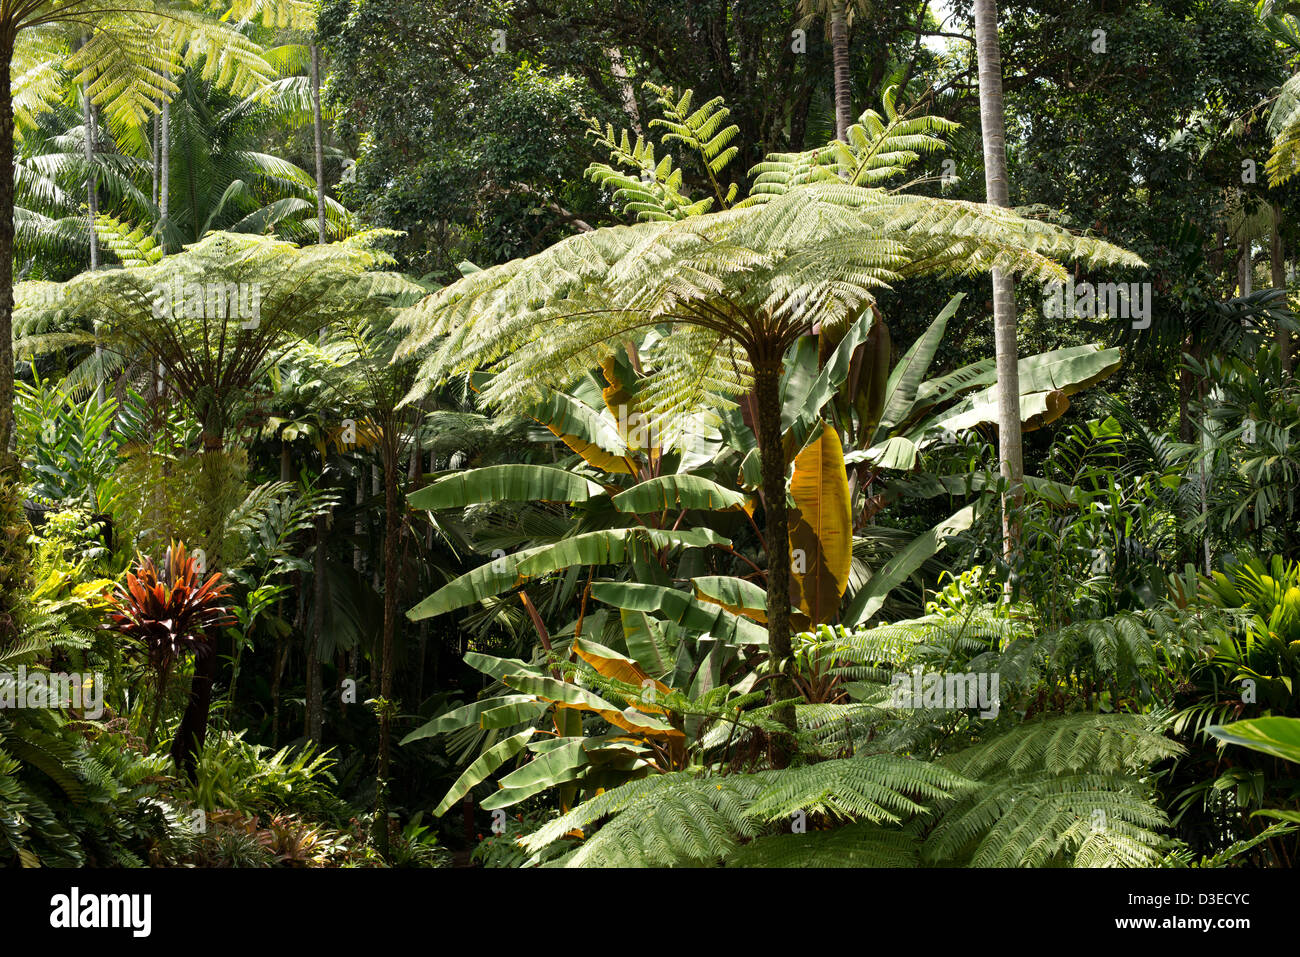 Botanical garden in Cairns, Queensland, Australia Stock Photo